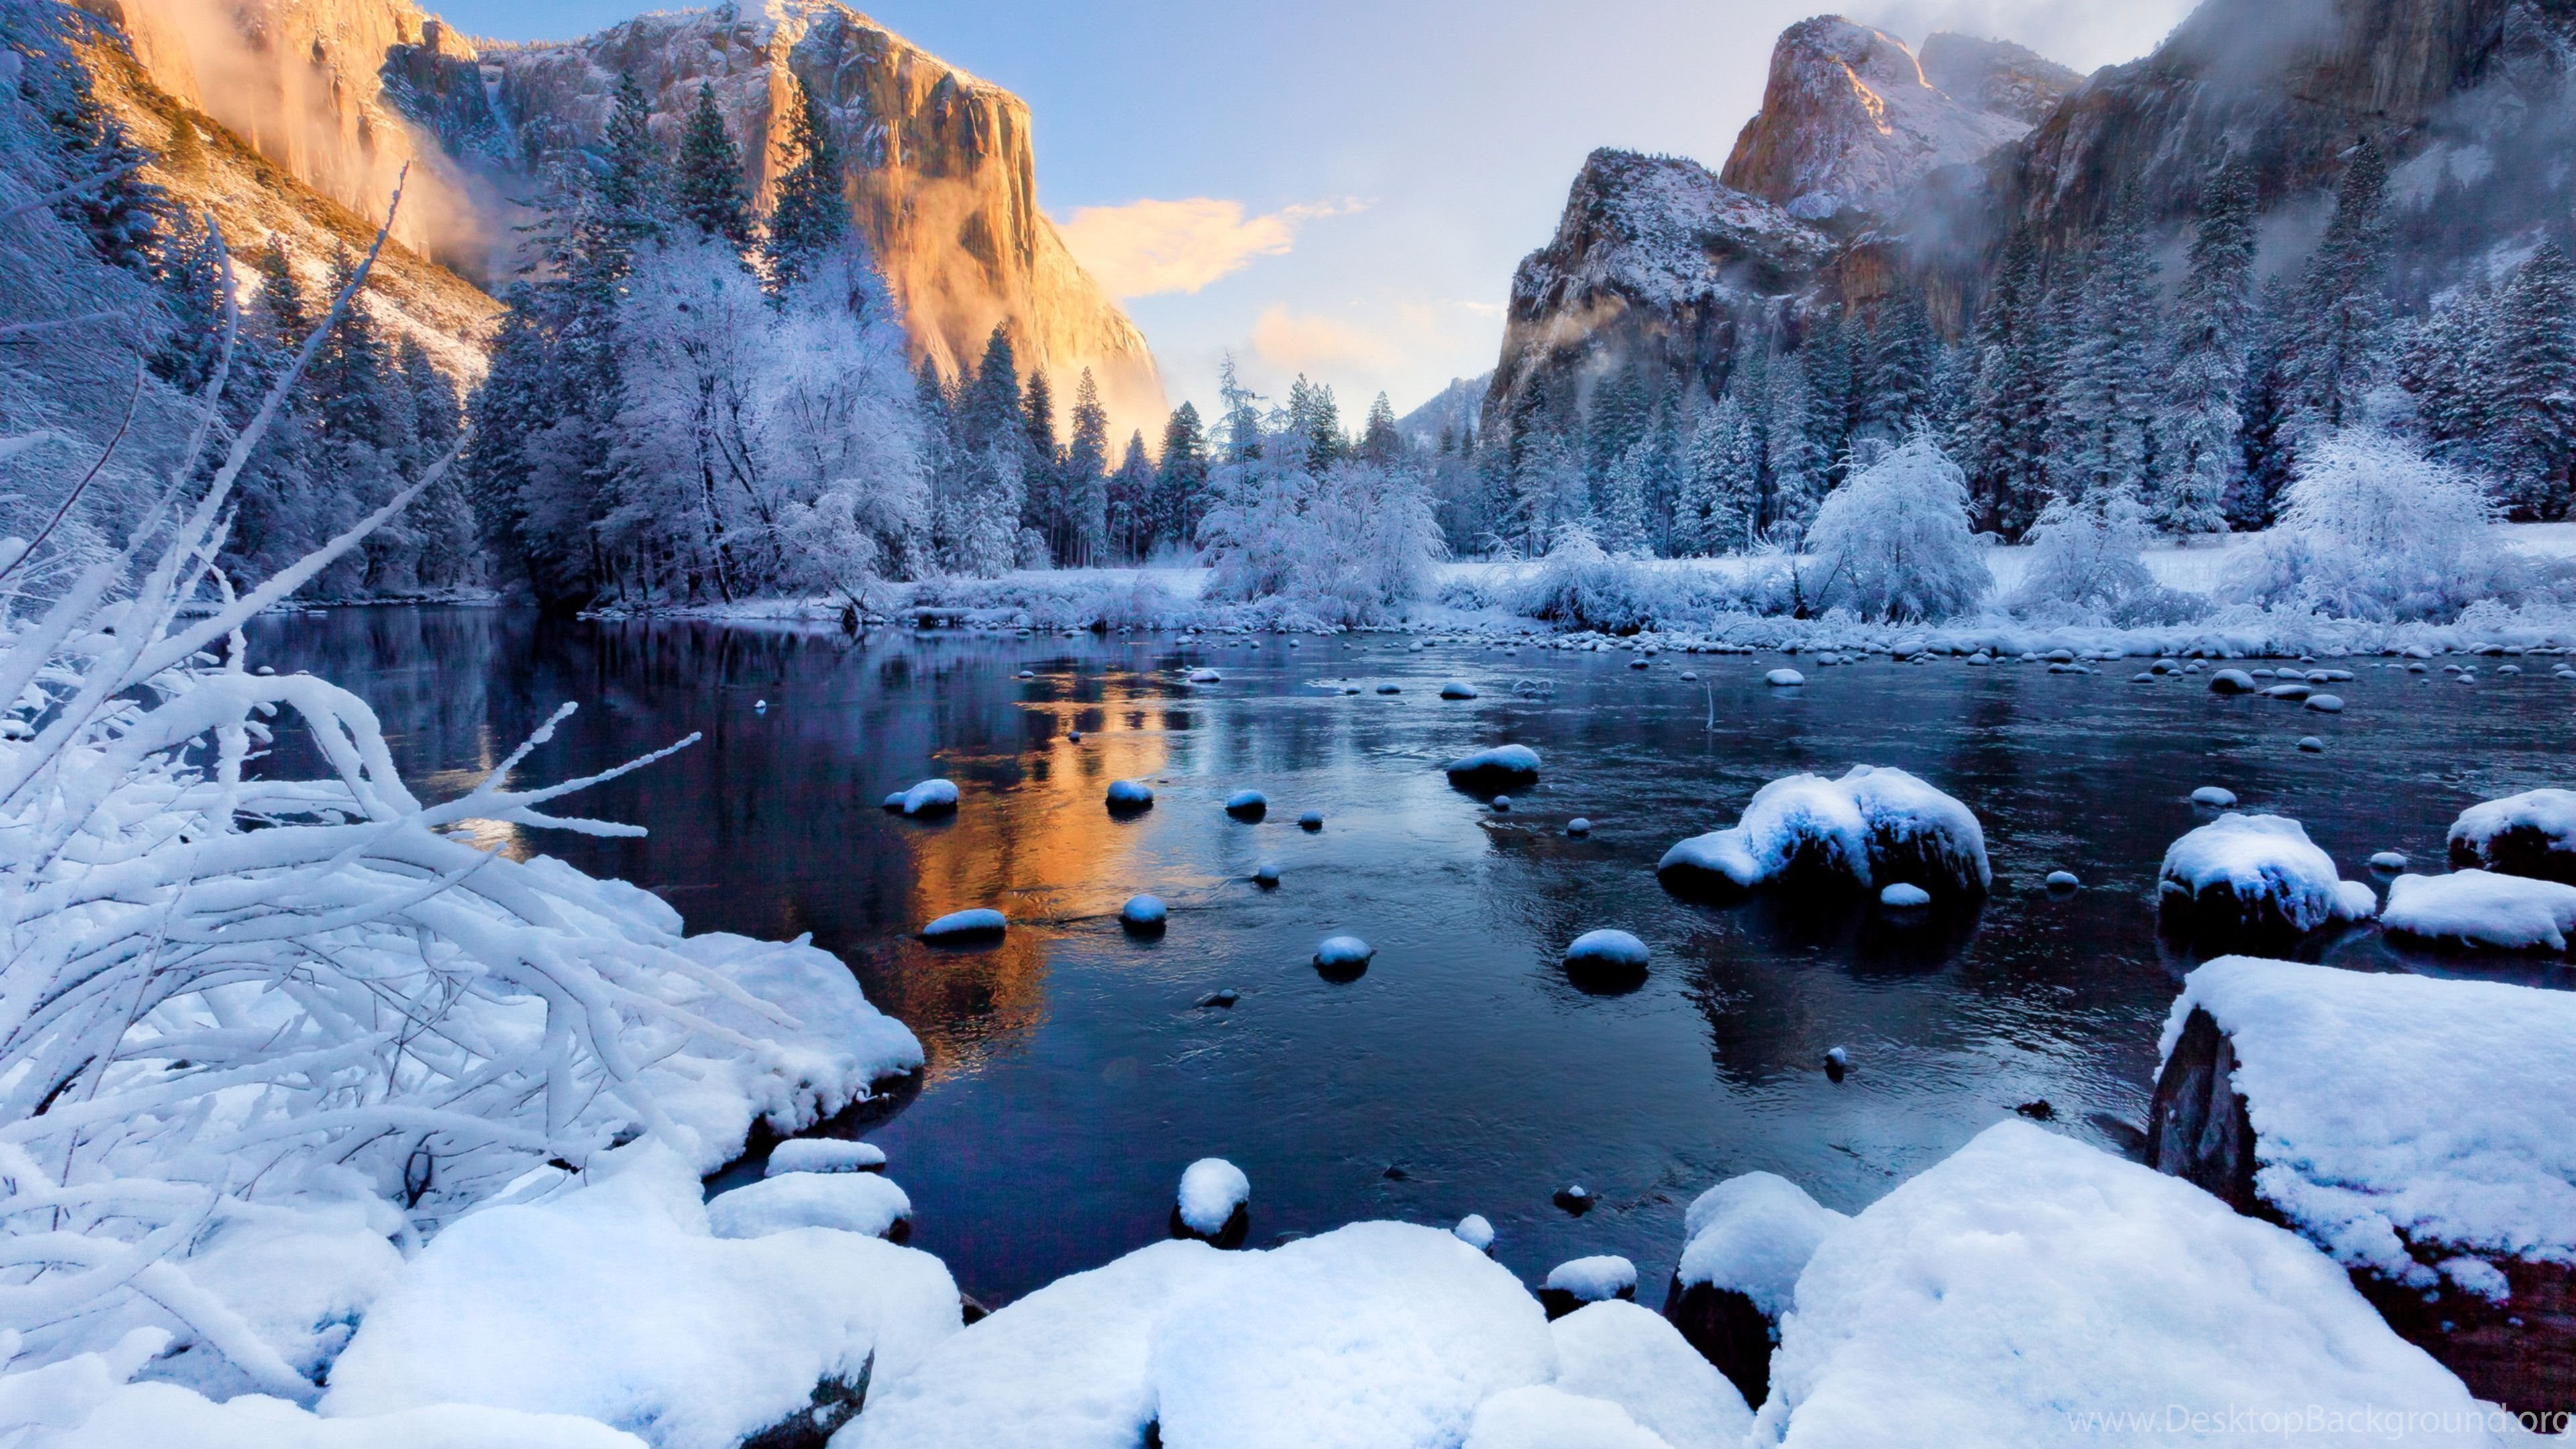 Красивая картинка со снегом. Йосемити национальный парк зимой. Национальный парк Йосемити Калифорния зима. Красивая зима. Зимний пейзаж.